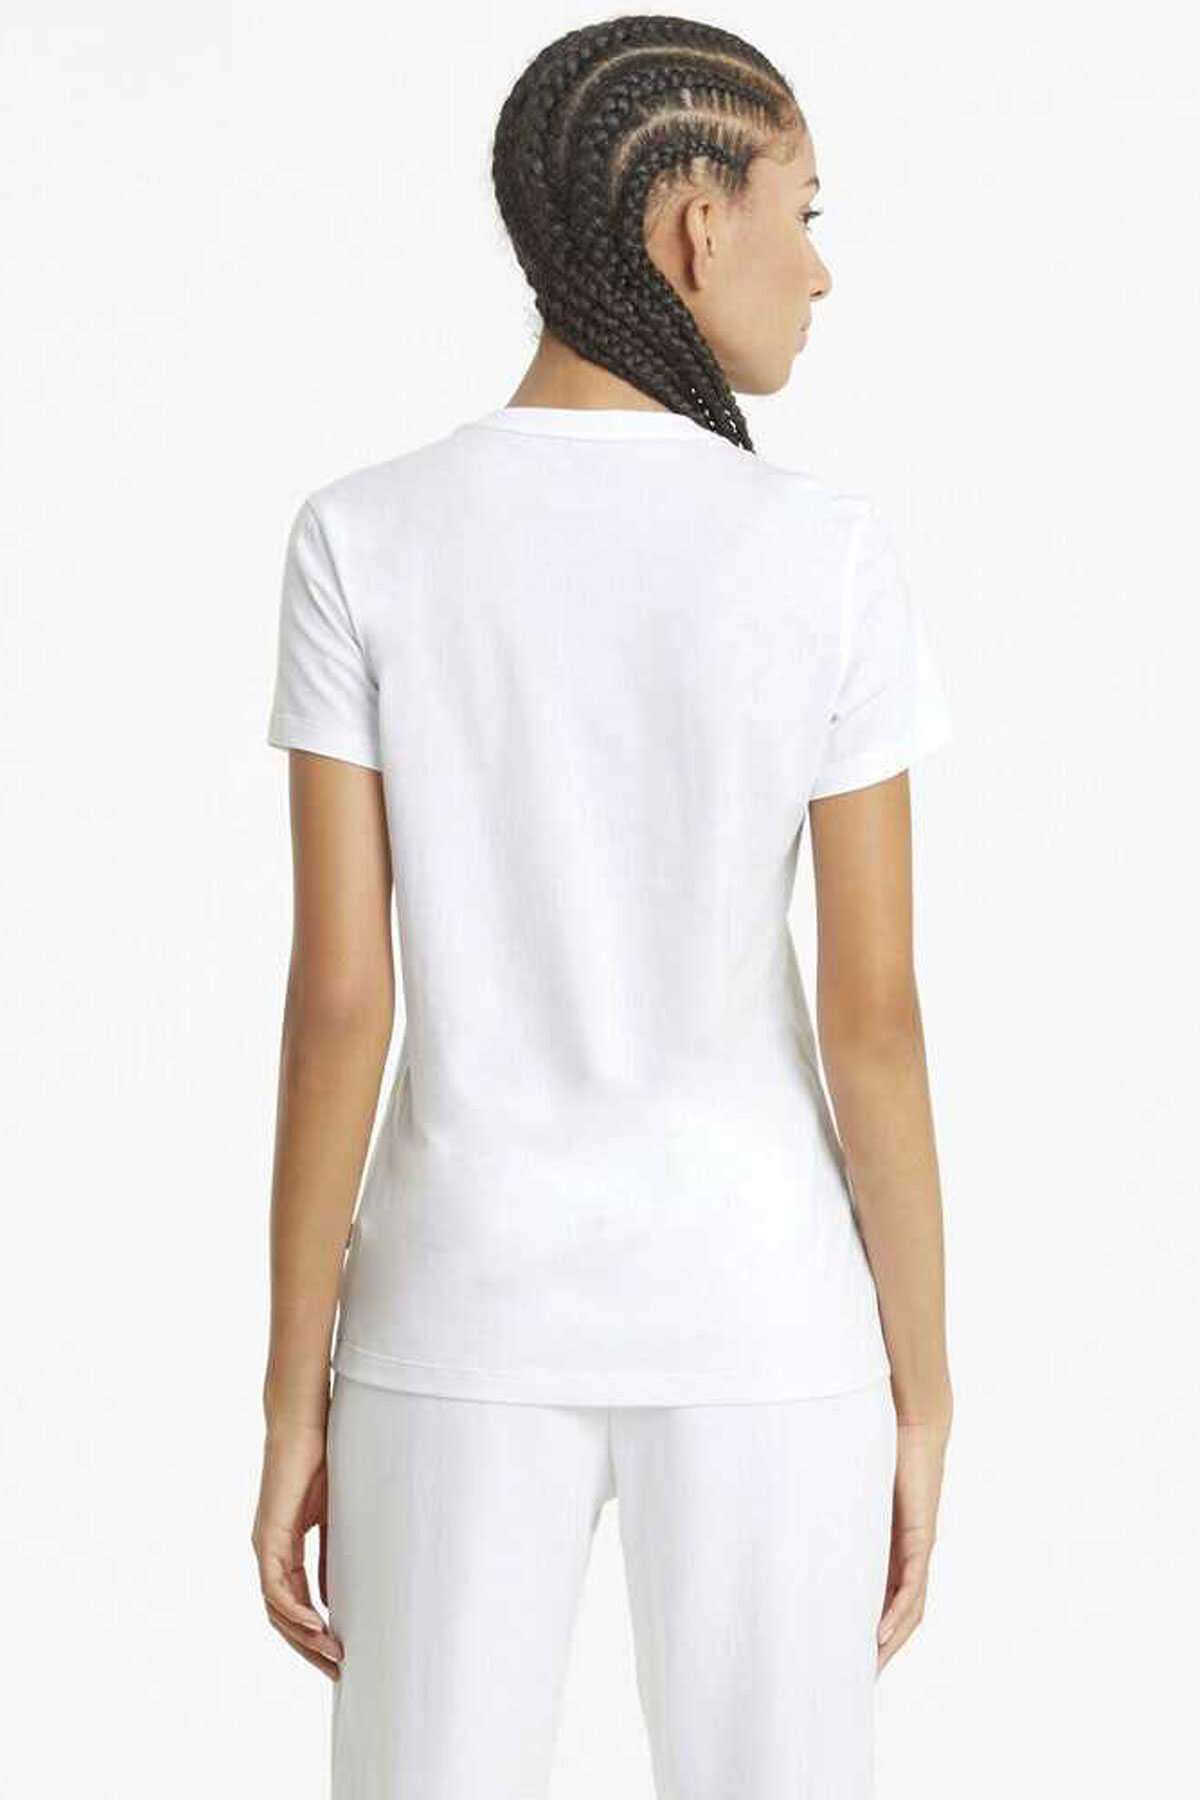 تیشرت یقه گرد چاپ دار زنانه سفید برند Puma 